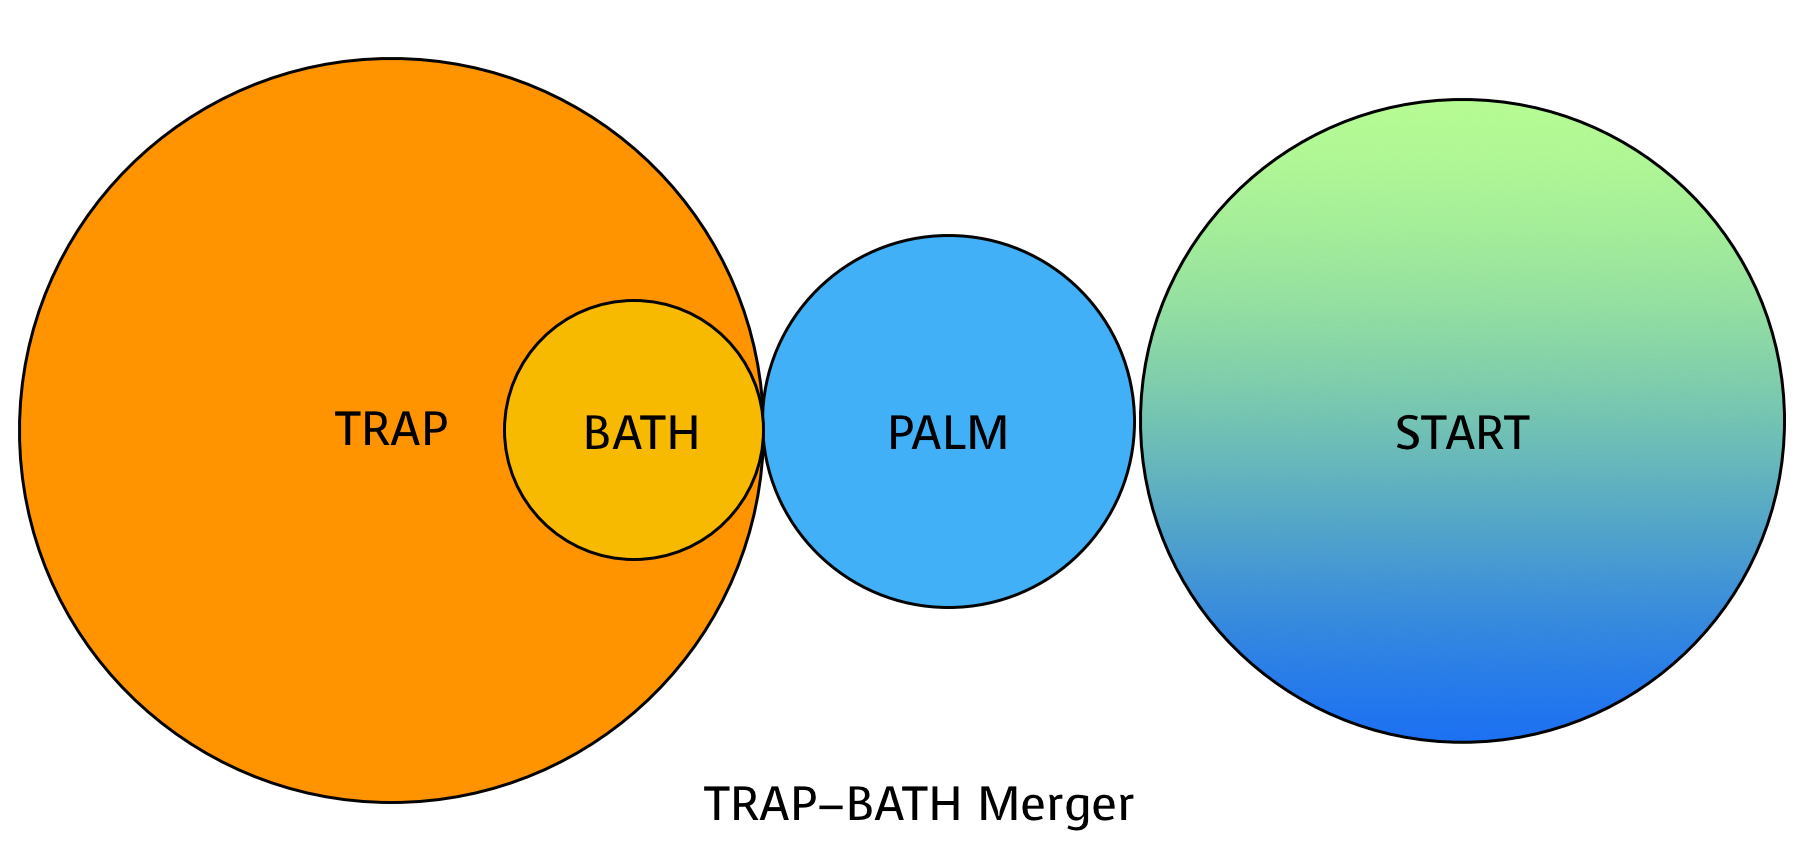 The TRAP-BATH Merger